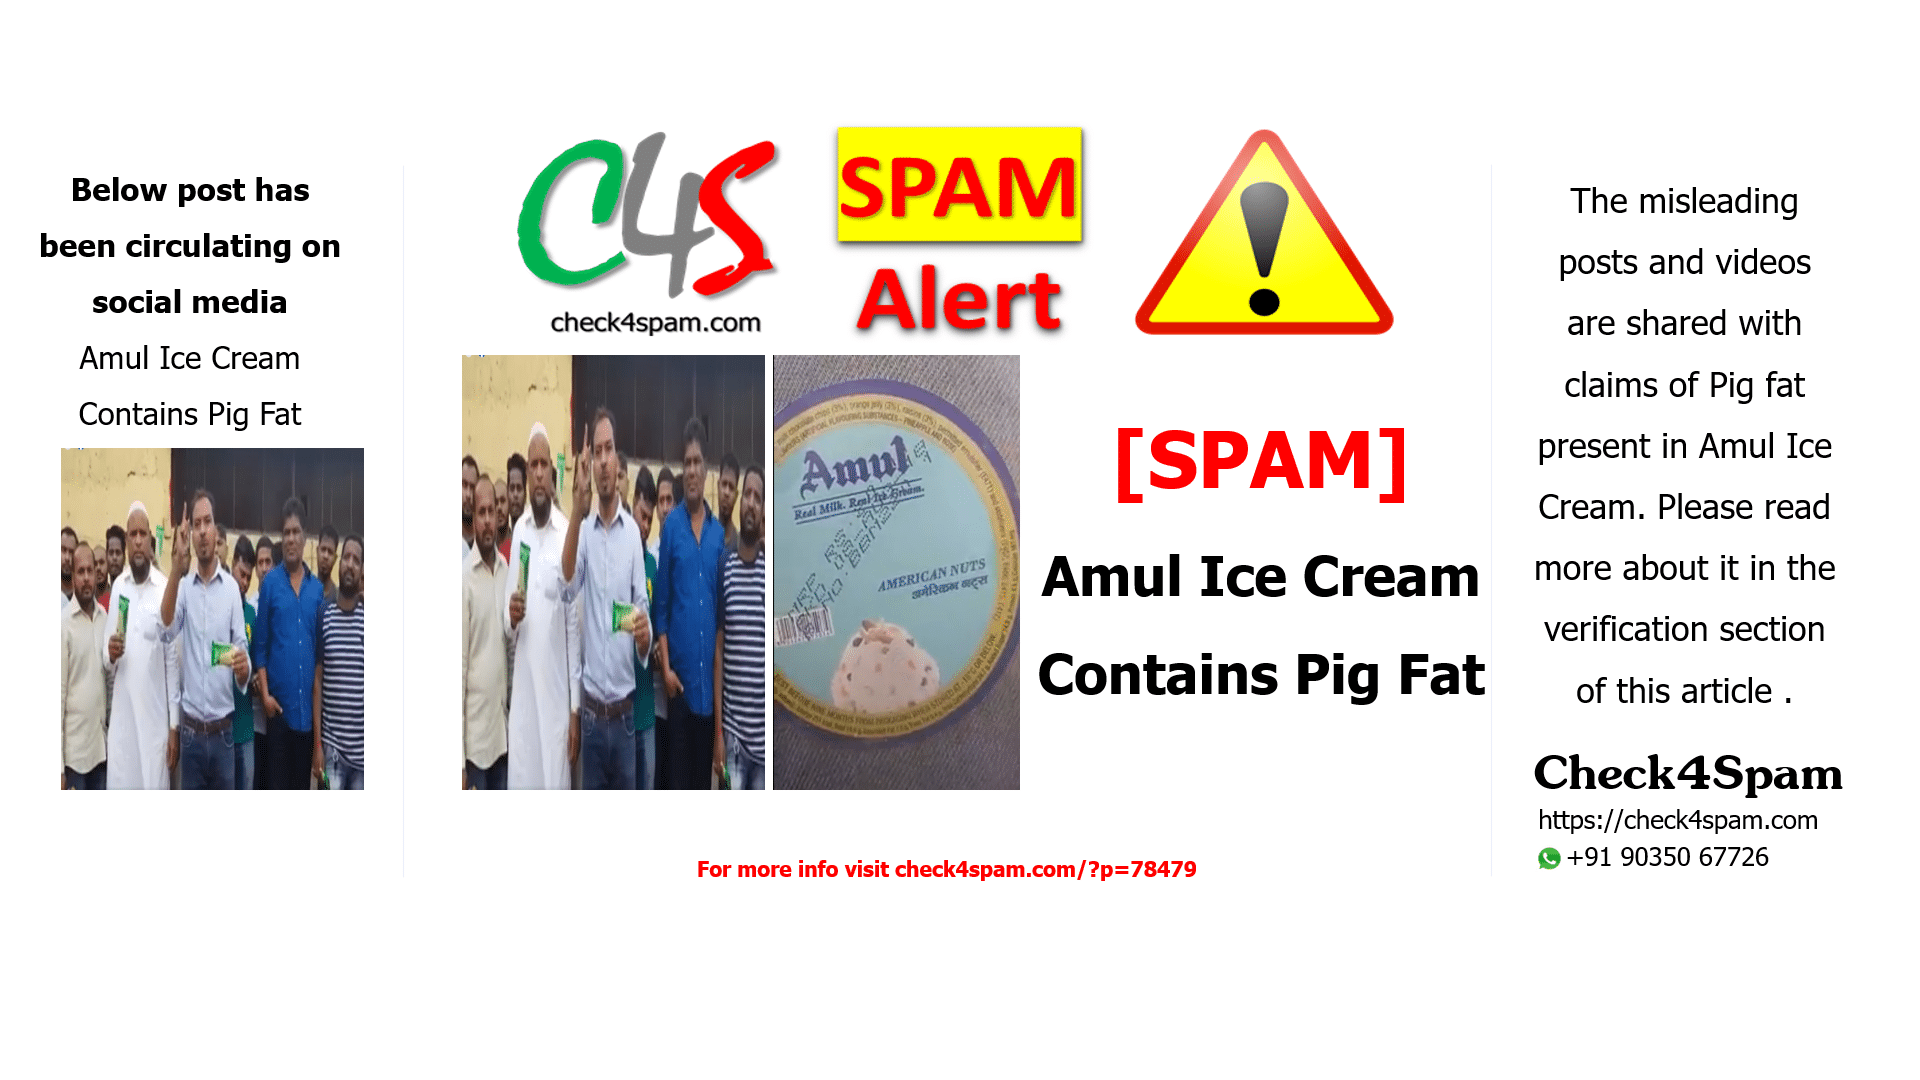 Amul Ice Cream Contains Pig Fat